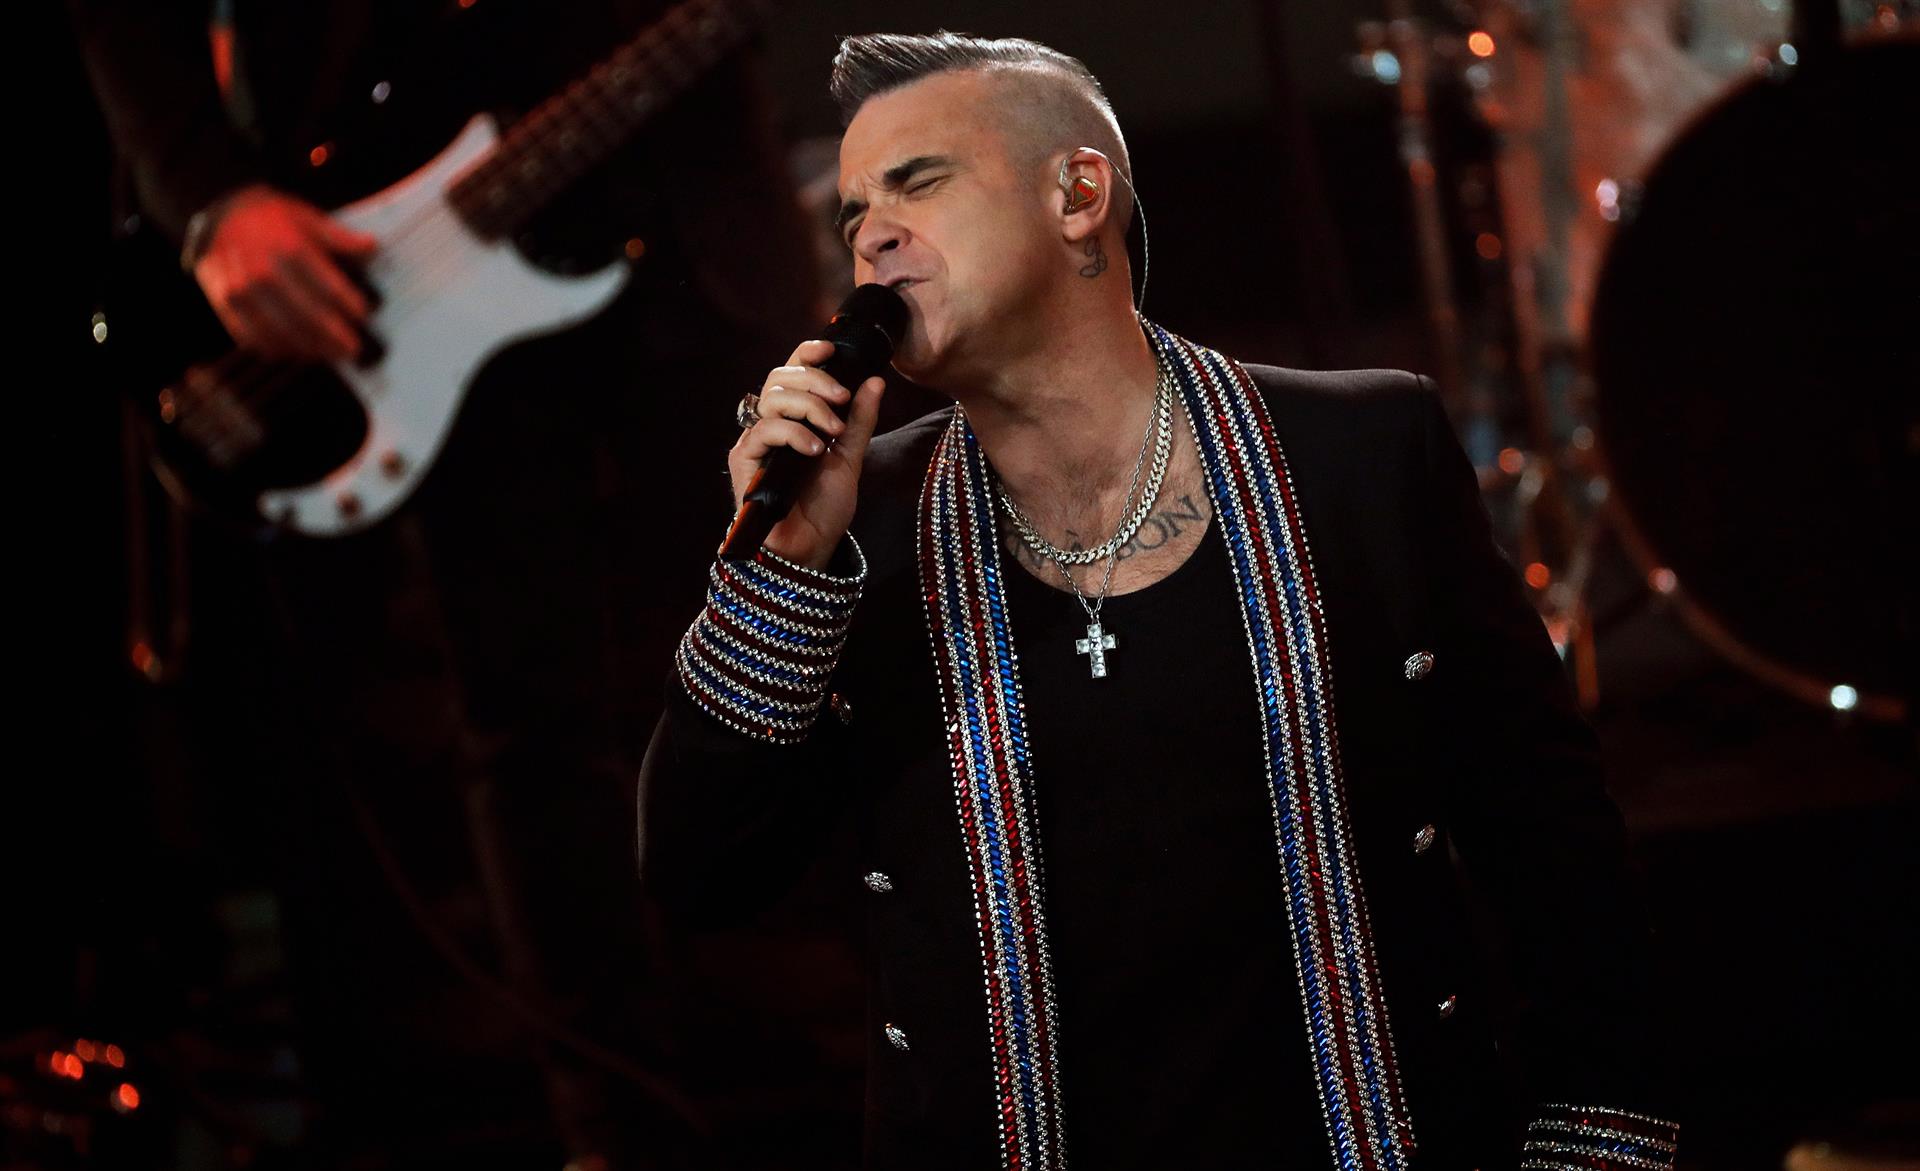 Imagen de archivo del cantante británico Robbie Williams. EFE/EPA/FELIPE TRUEBA